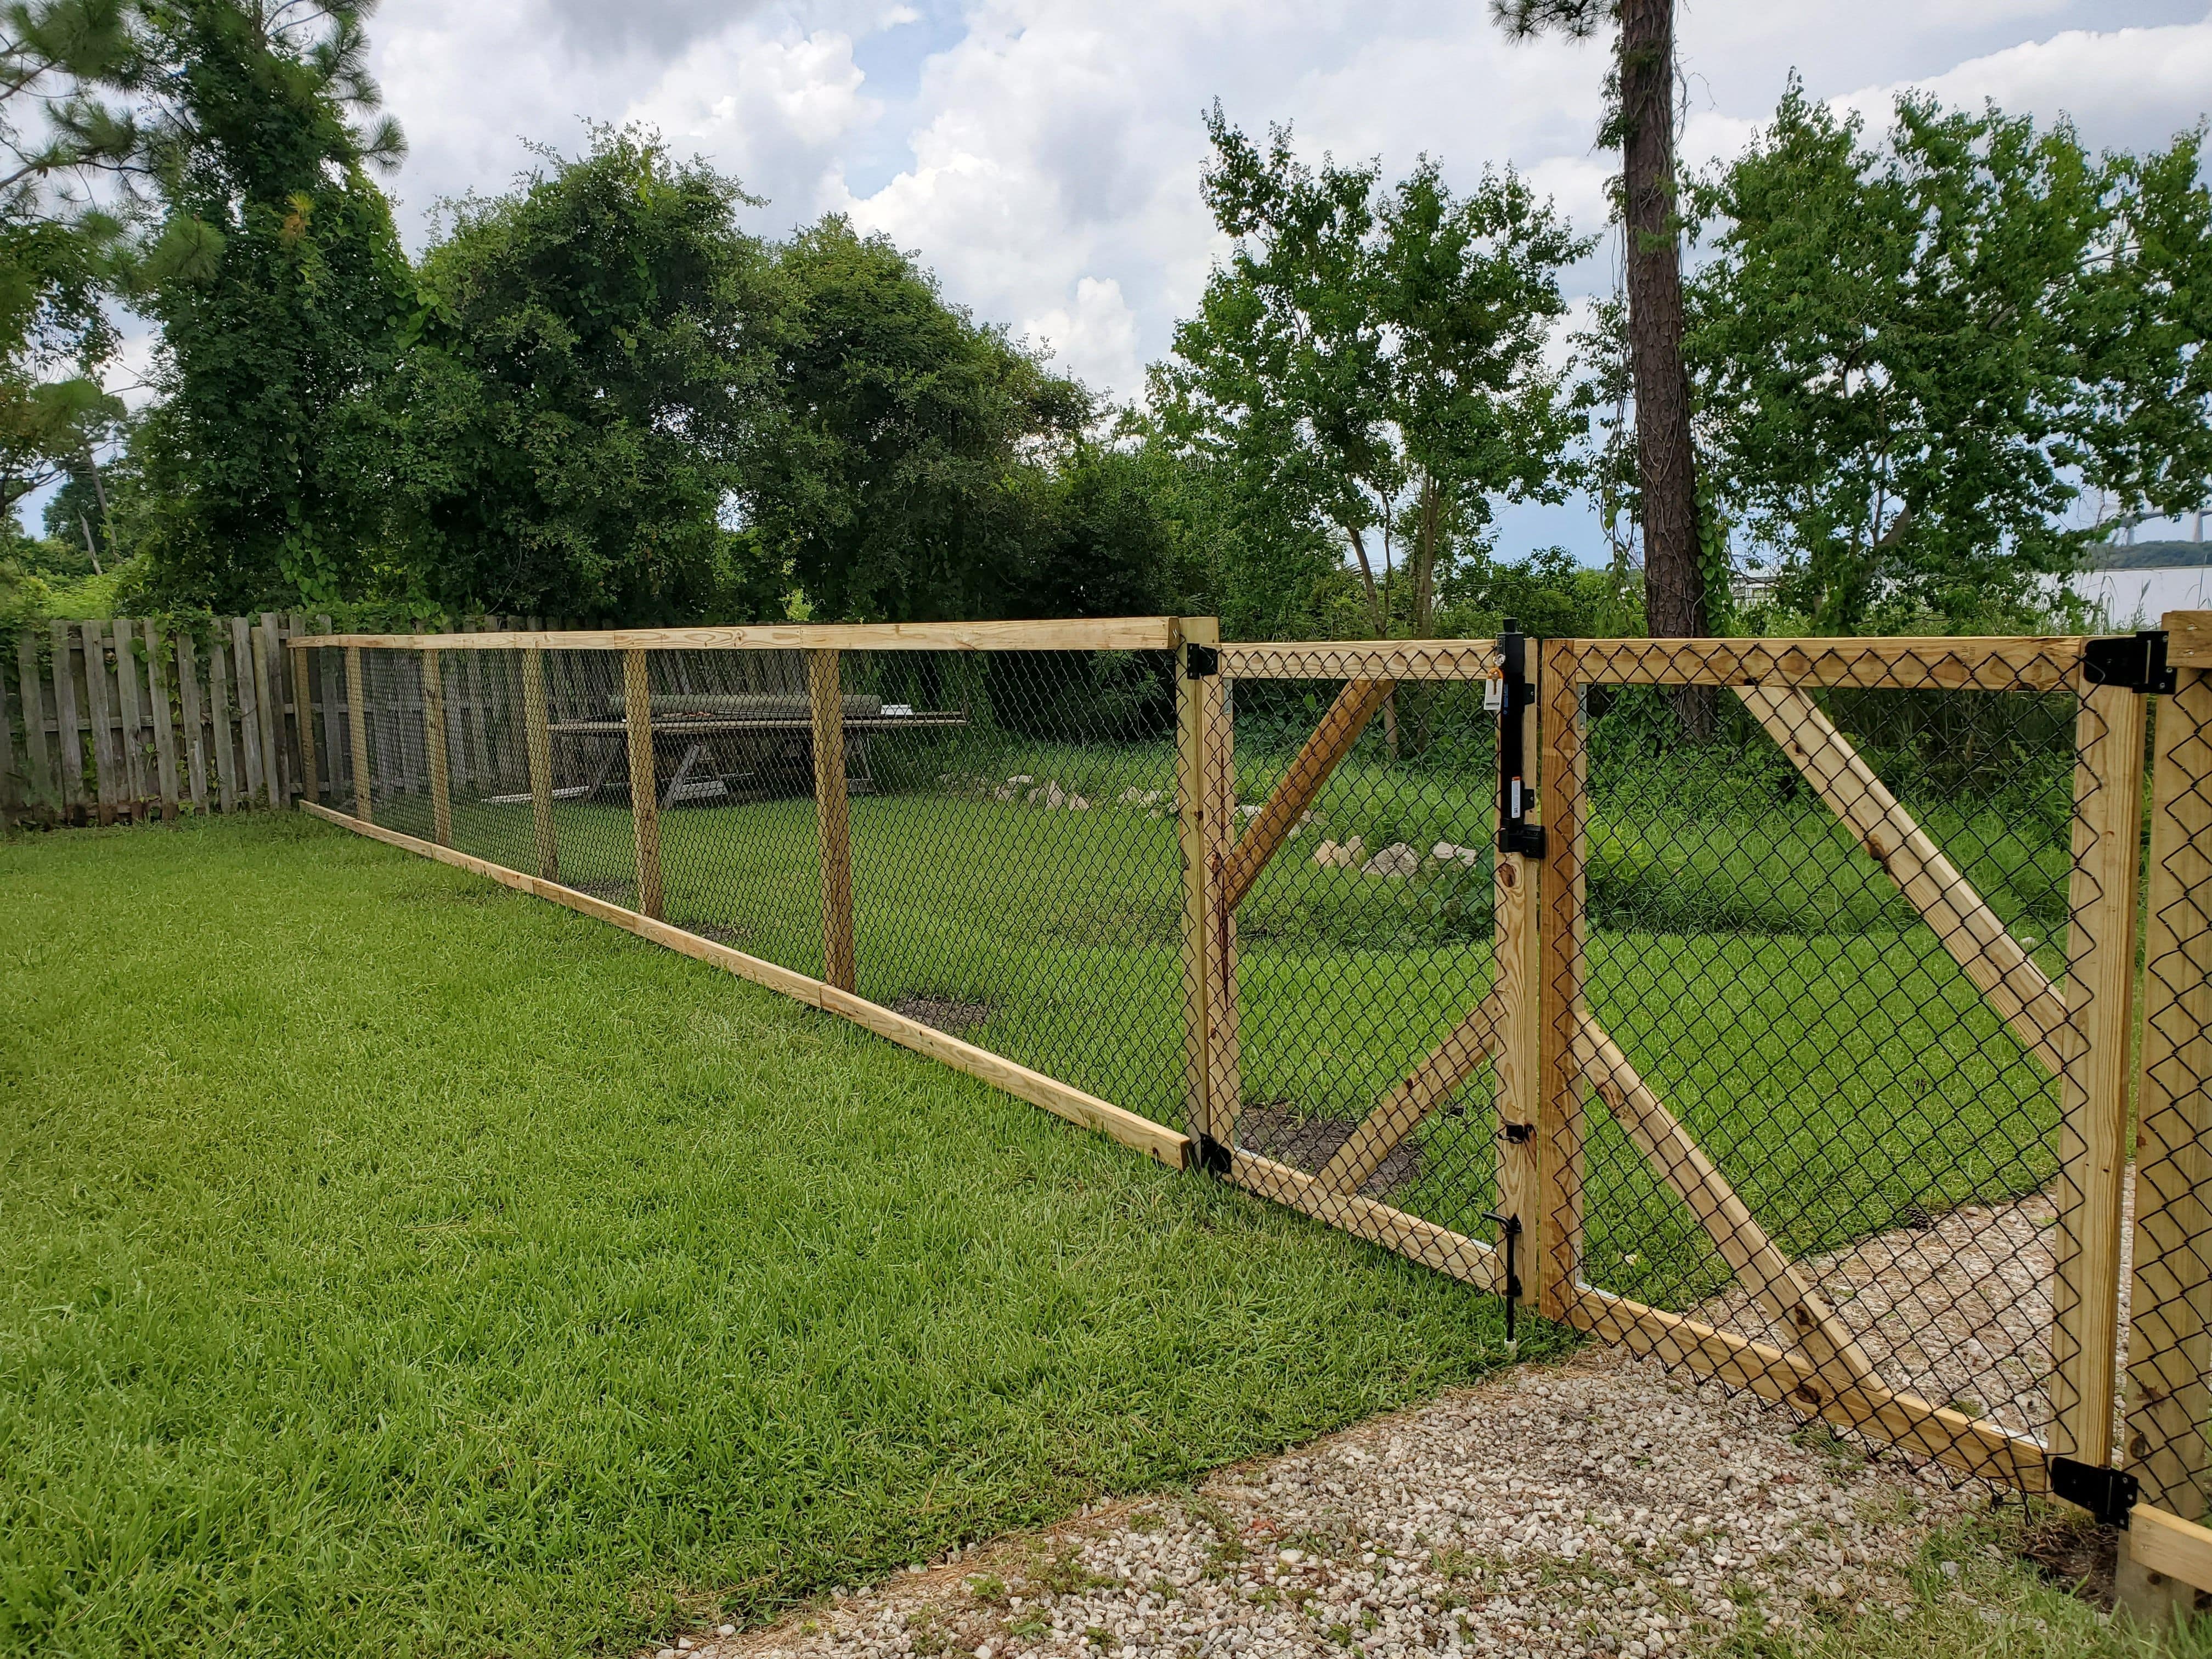 Fence in backyard